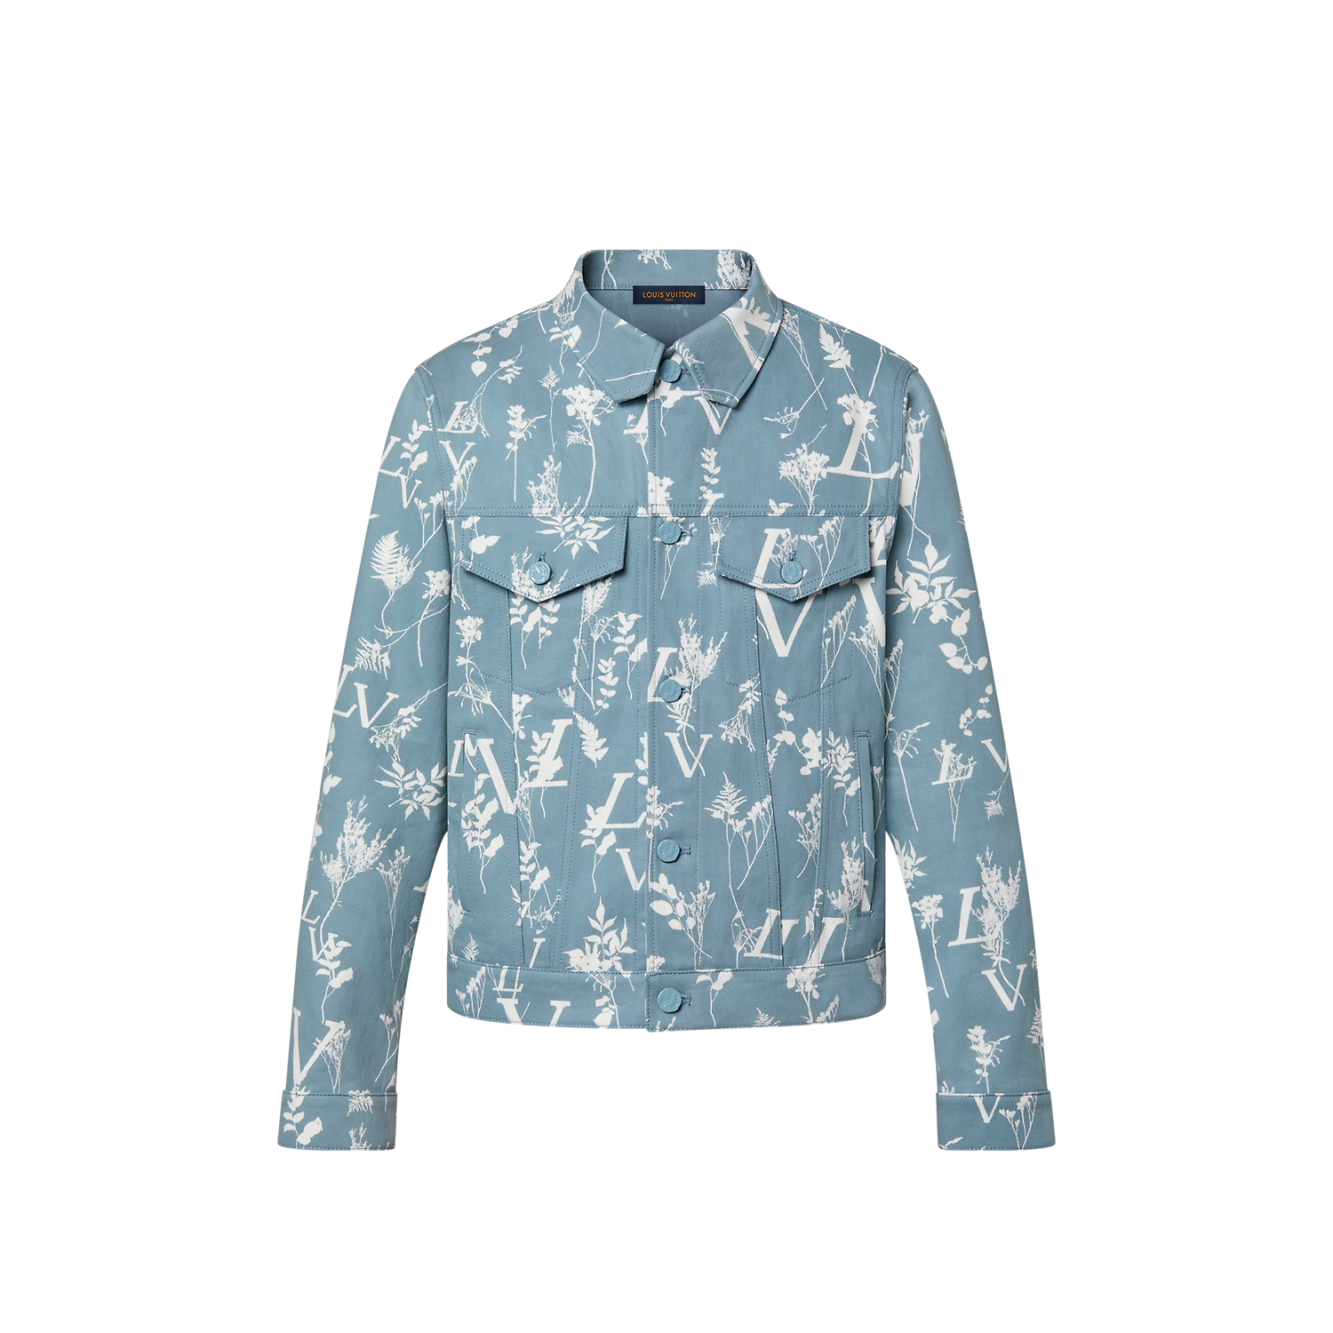 Louis Vuitton Regular DNA Poplin Shirt - Vitkac shop online